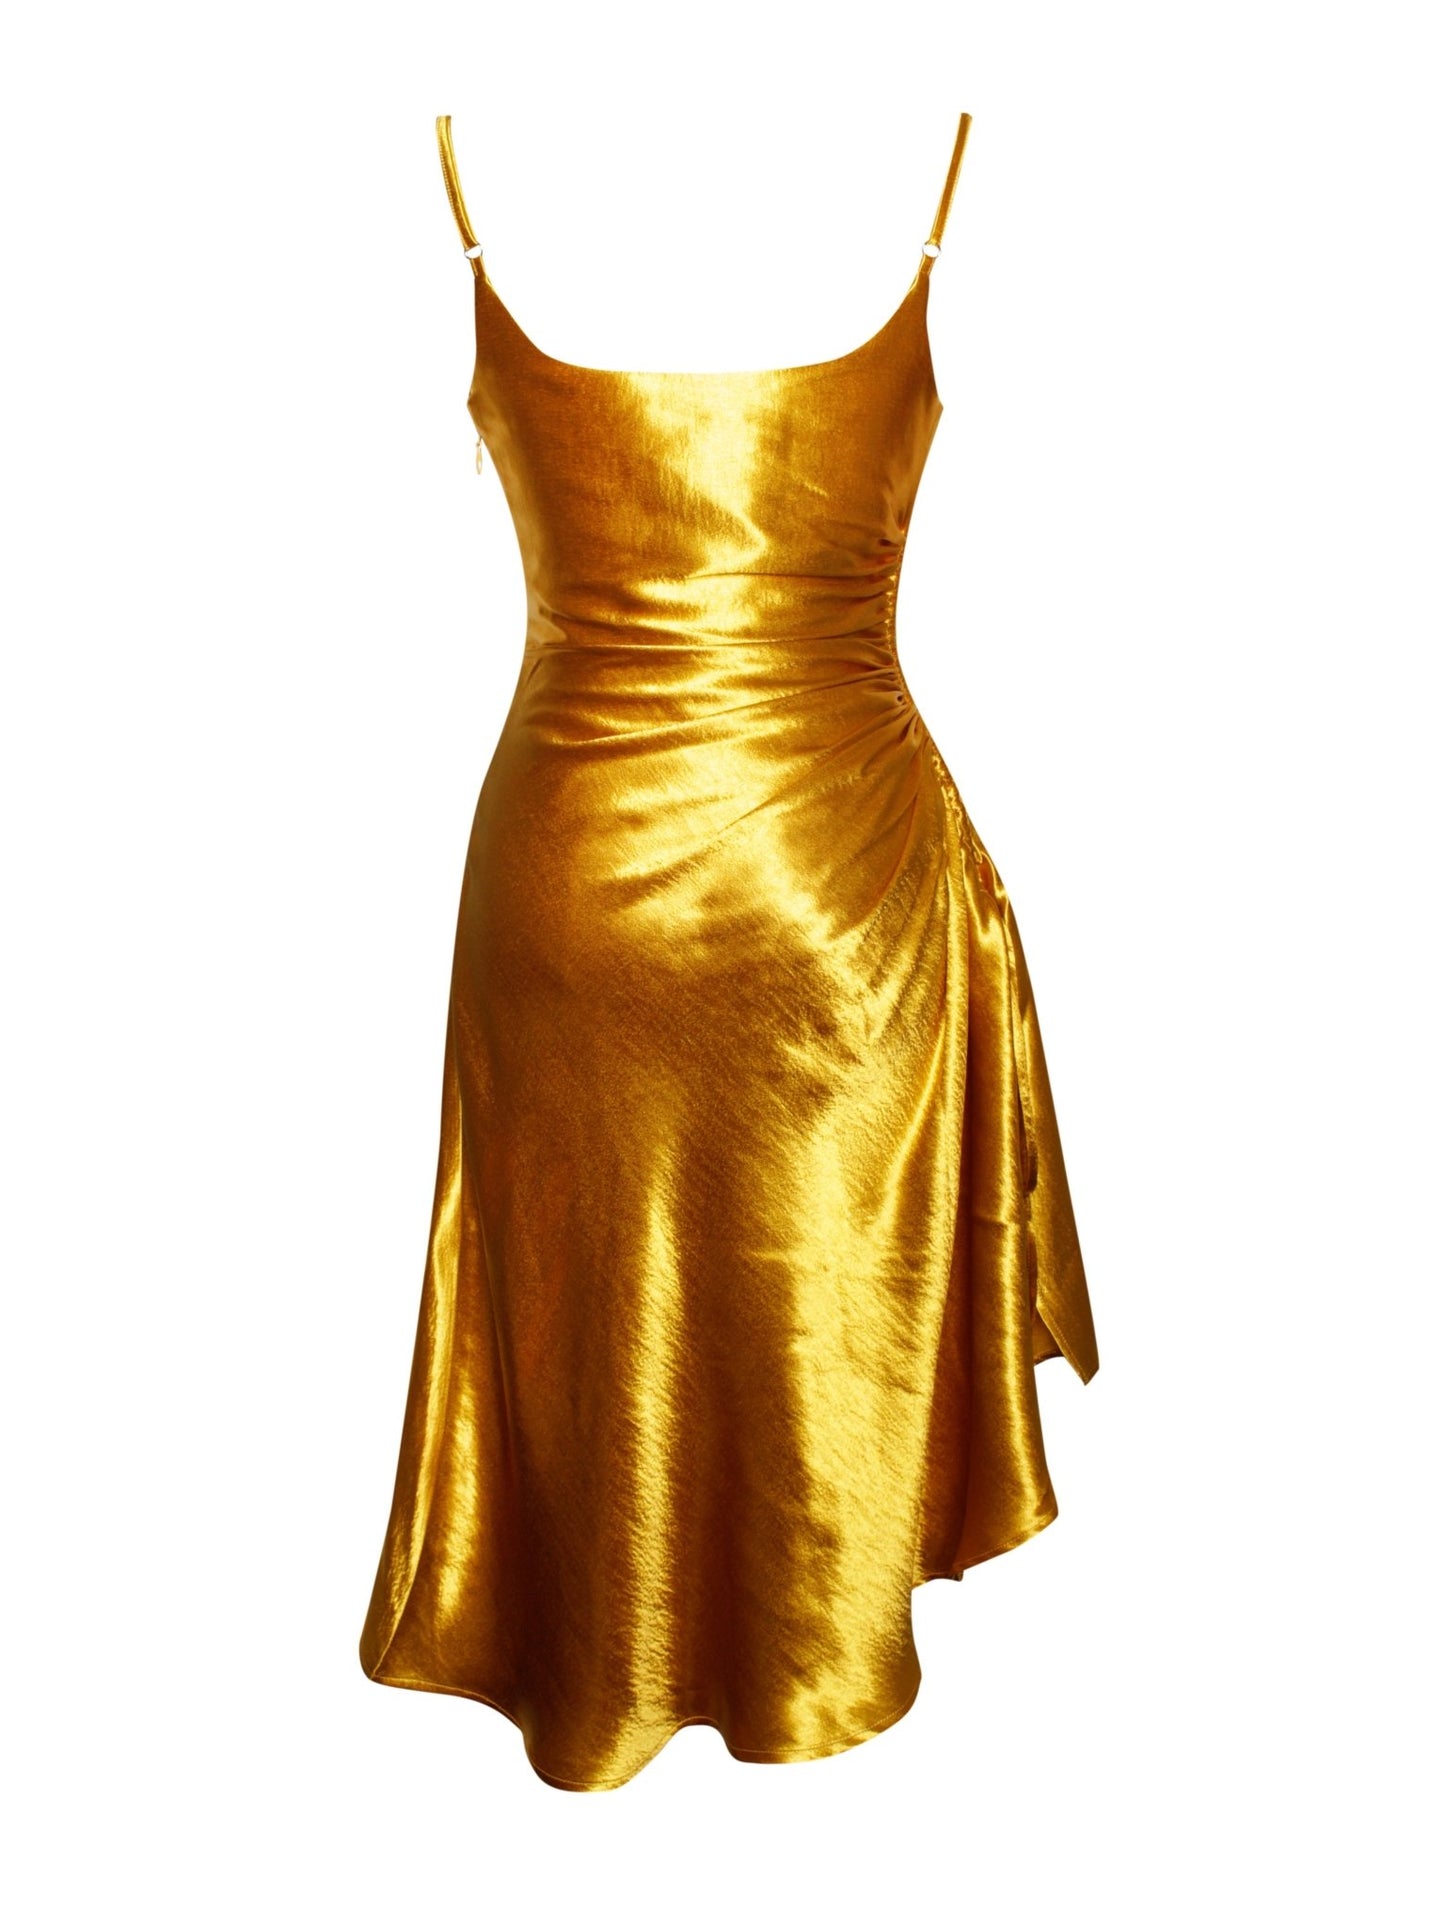 Mindy Gold Satin Dress - HOUSE OF SHE